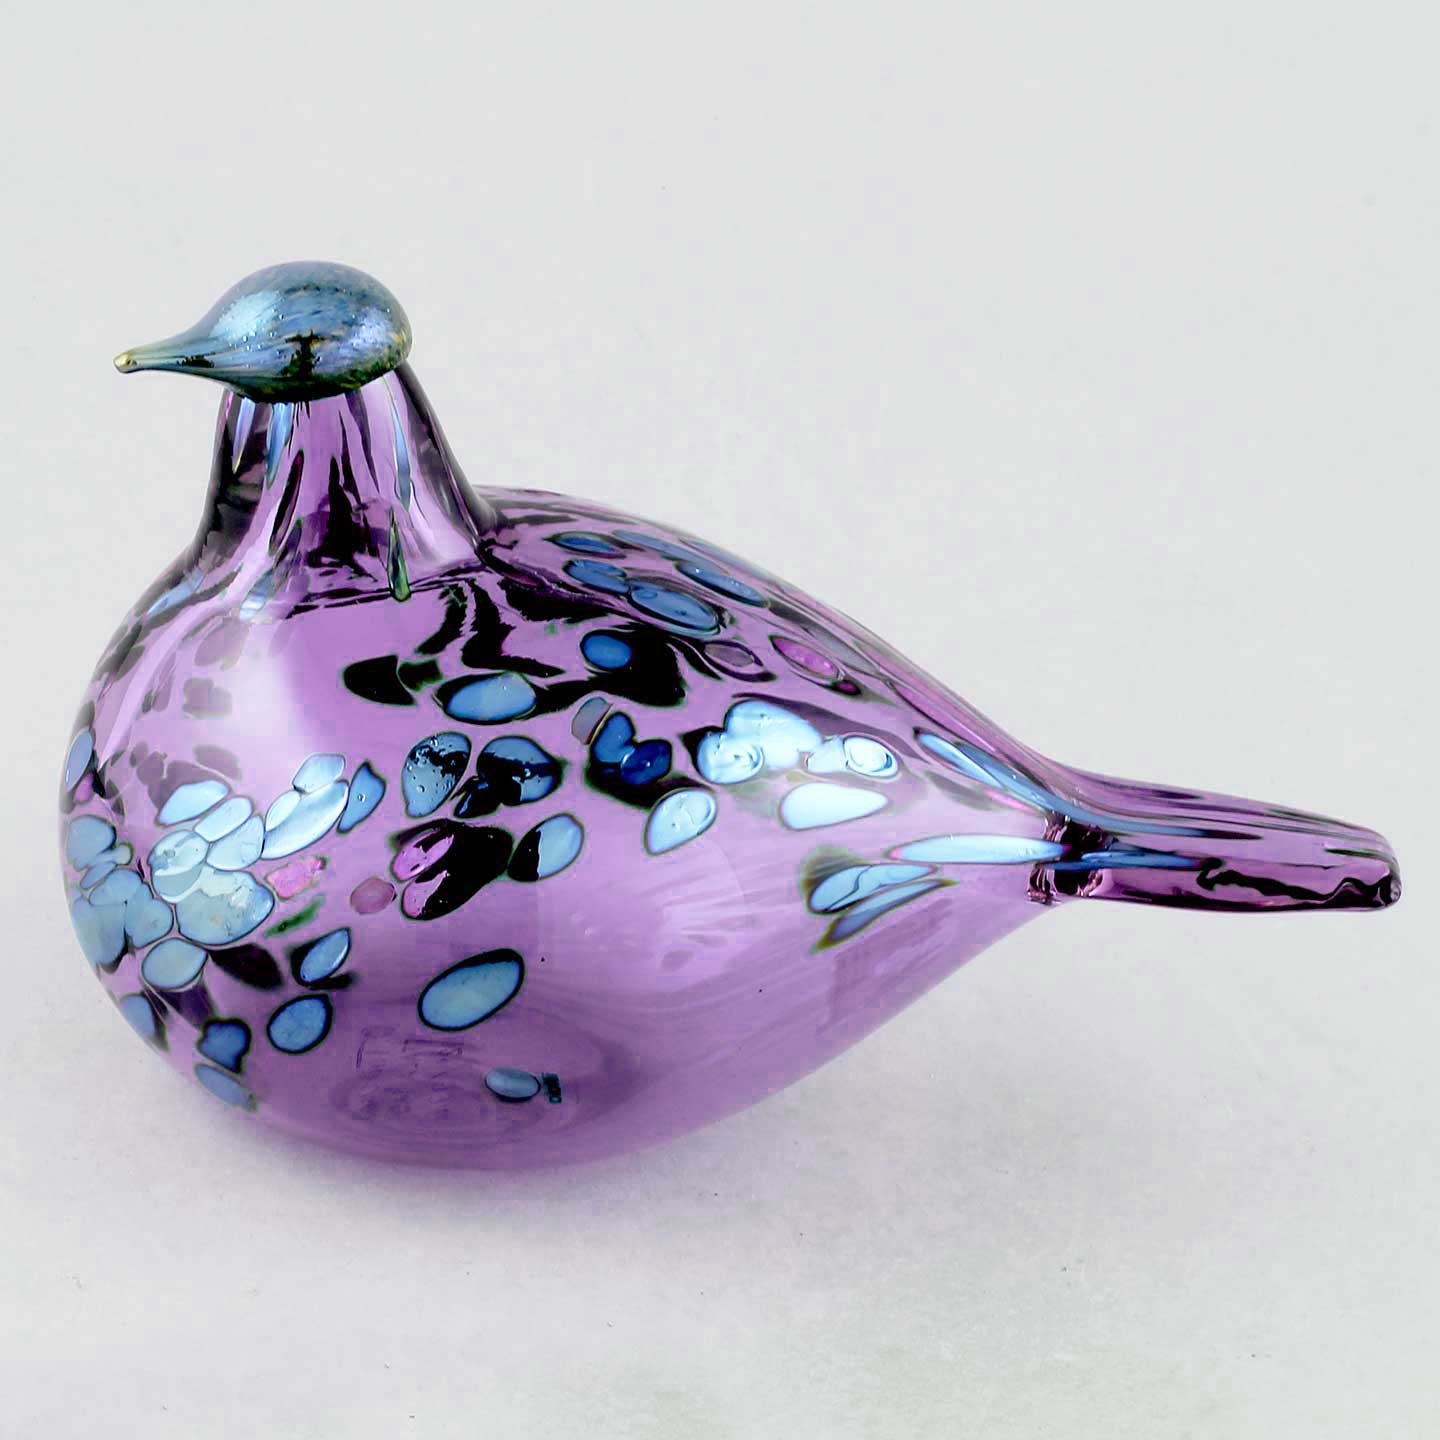 オイバ・トイッカ ガラスの鳥 アニュアルバード アメジスト 18cm 2021年